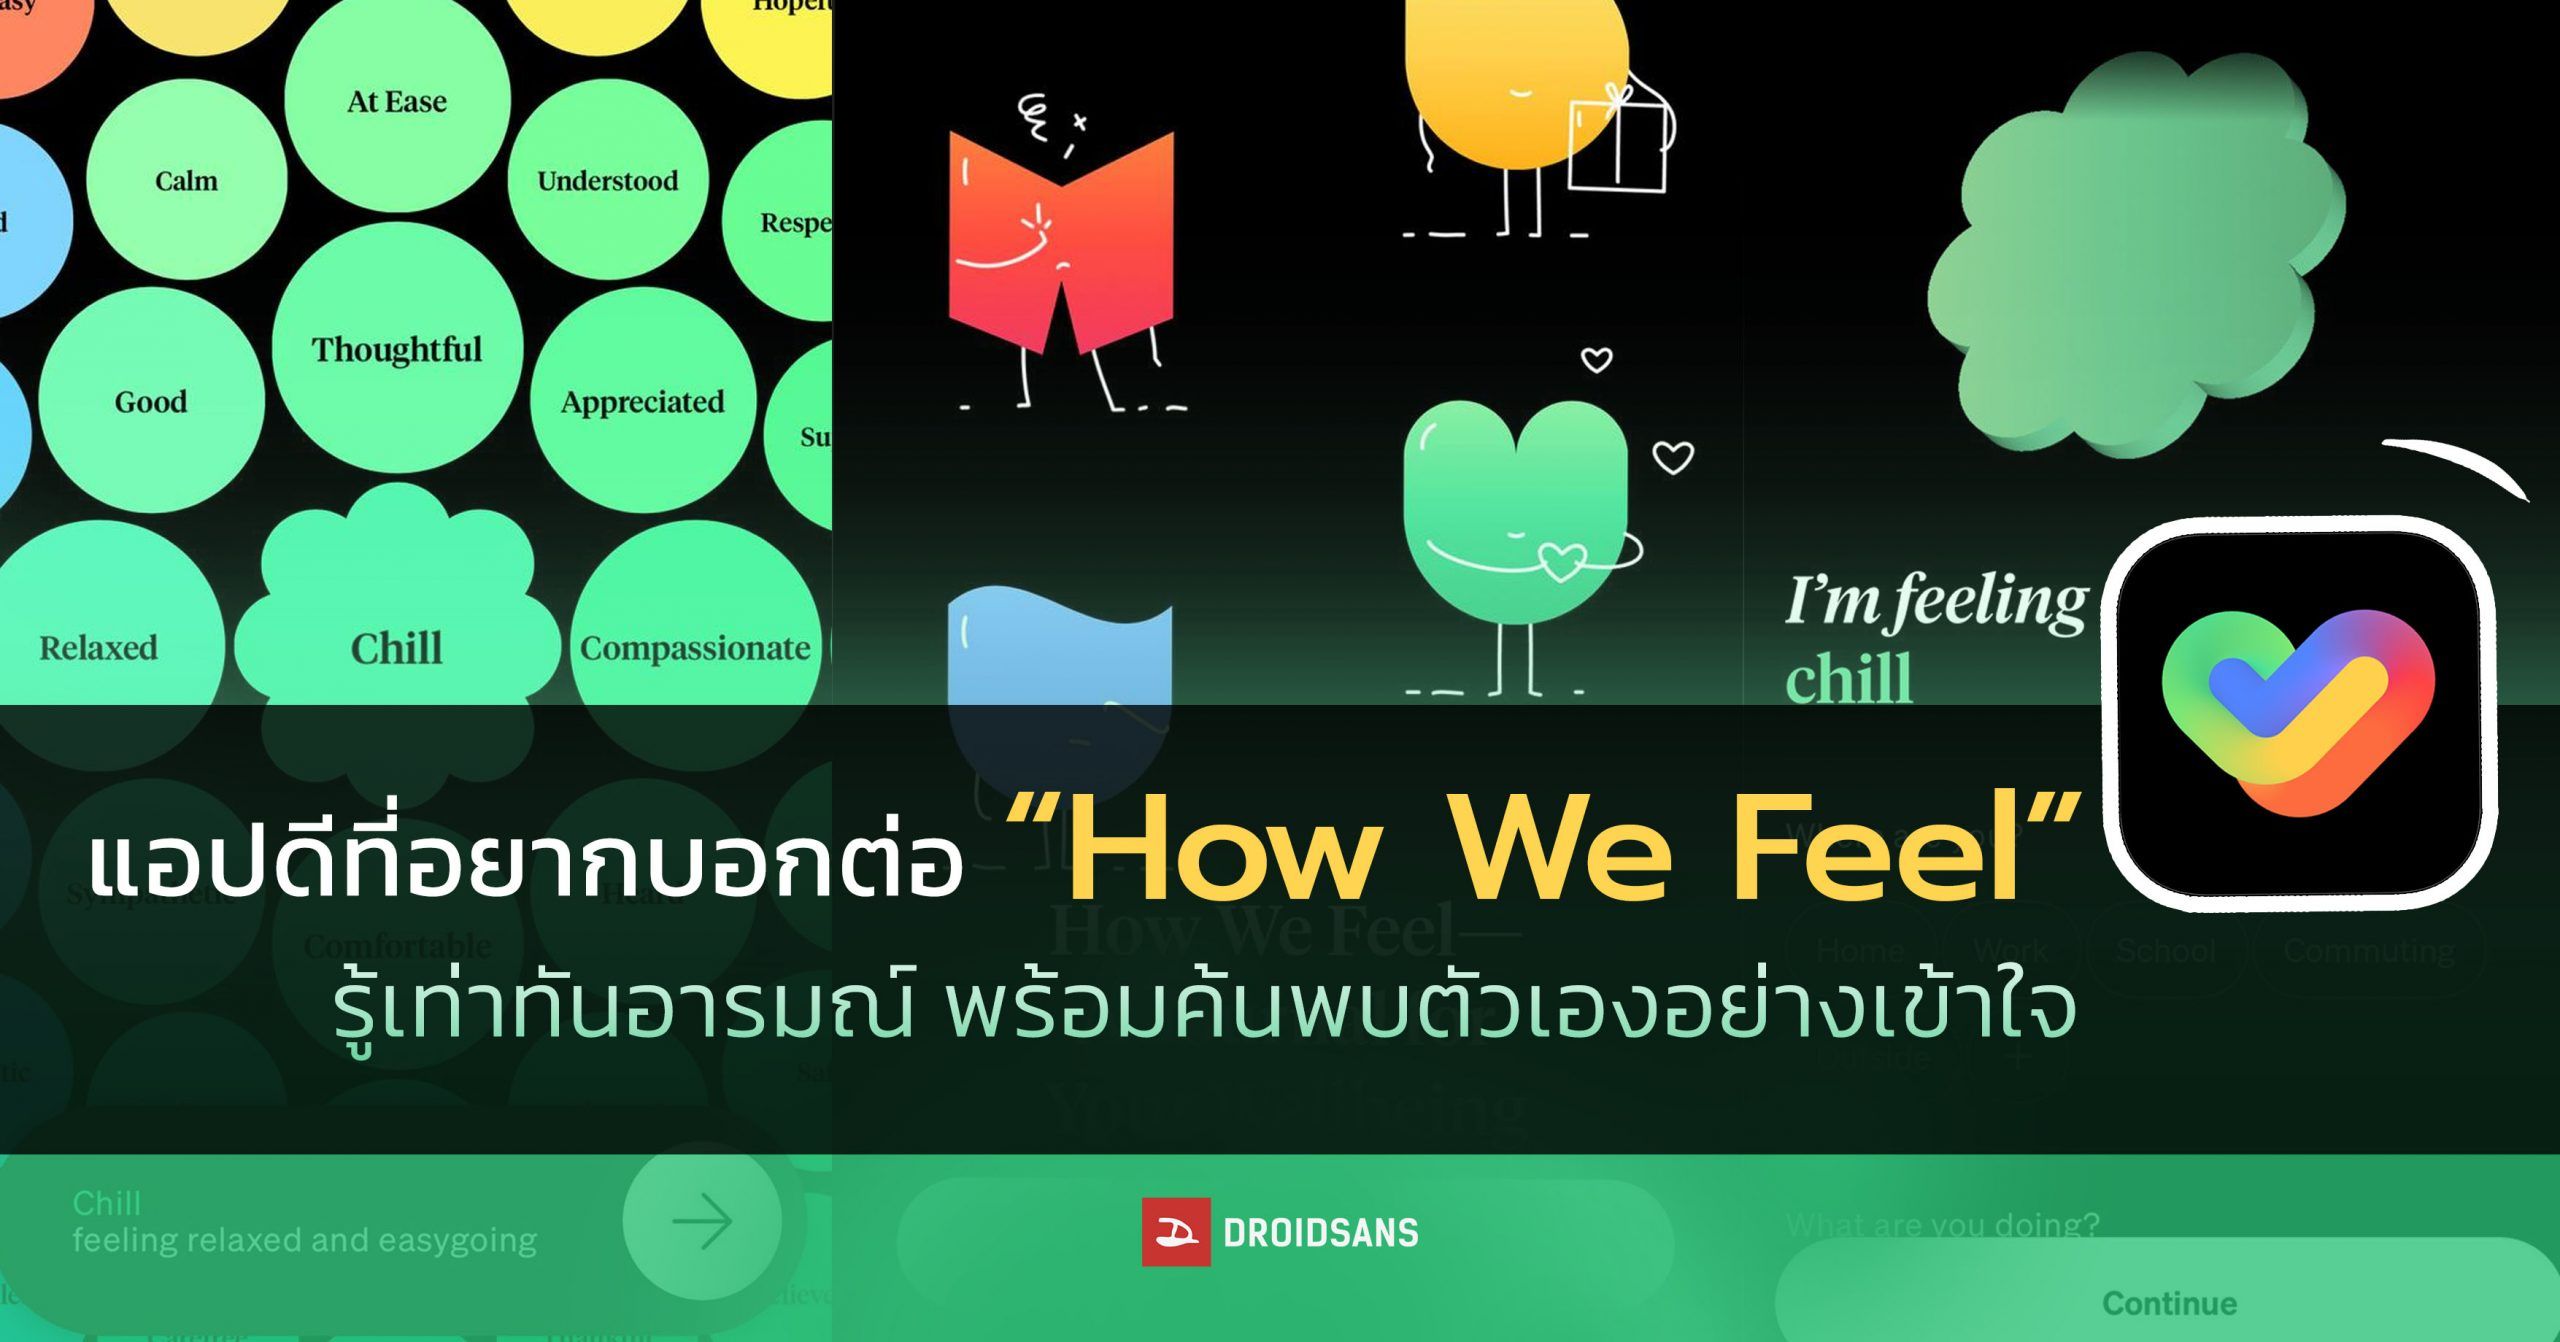 แนะนำ App | How We Feel ช่วยบันทึกสุขภาพจิตตัวเองให้เรารับรู้ และเข้าใจสภาวะทางอารมณ์ได้อย่างดี